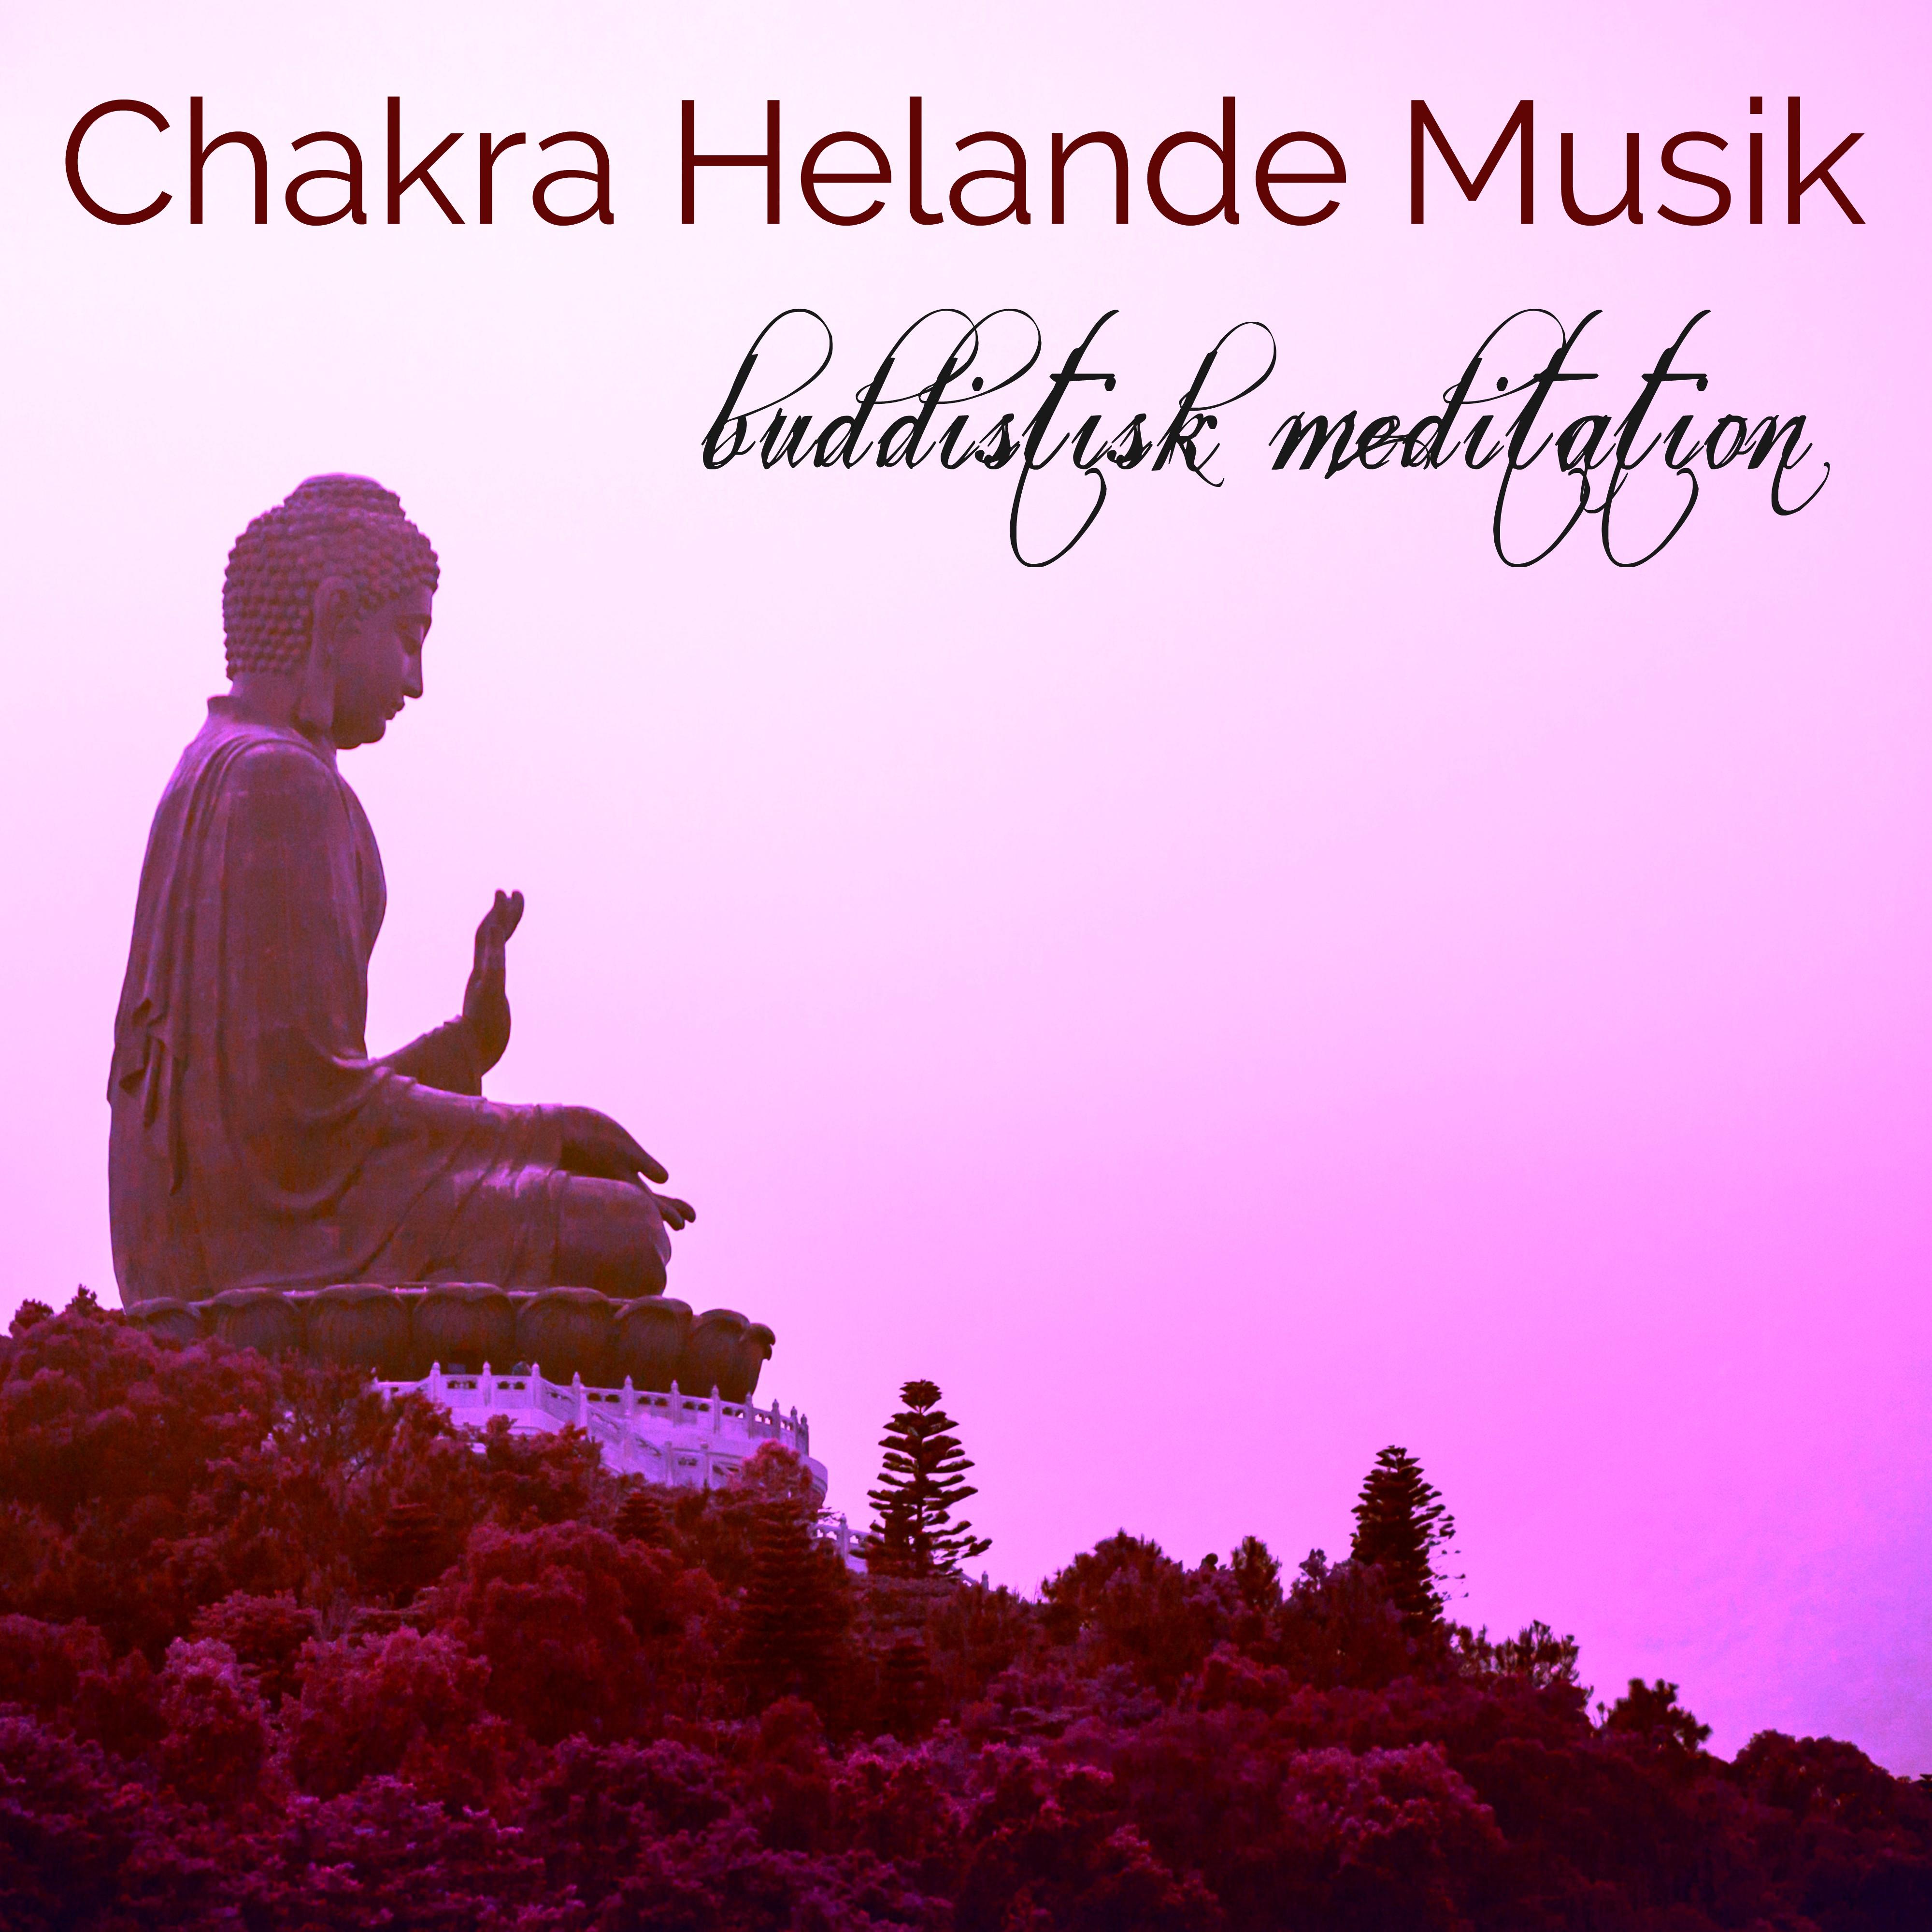 Chakra Helande Musik Buddistisk Meditation  Avslappnande Musik f r Chakra Meditation, Mindfulnesstr ning och K rleksfull V nlighet Meditation, Kundalini Yoga och Chakra Balancing